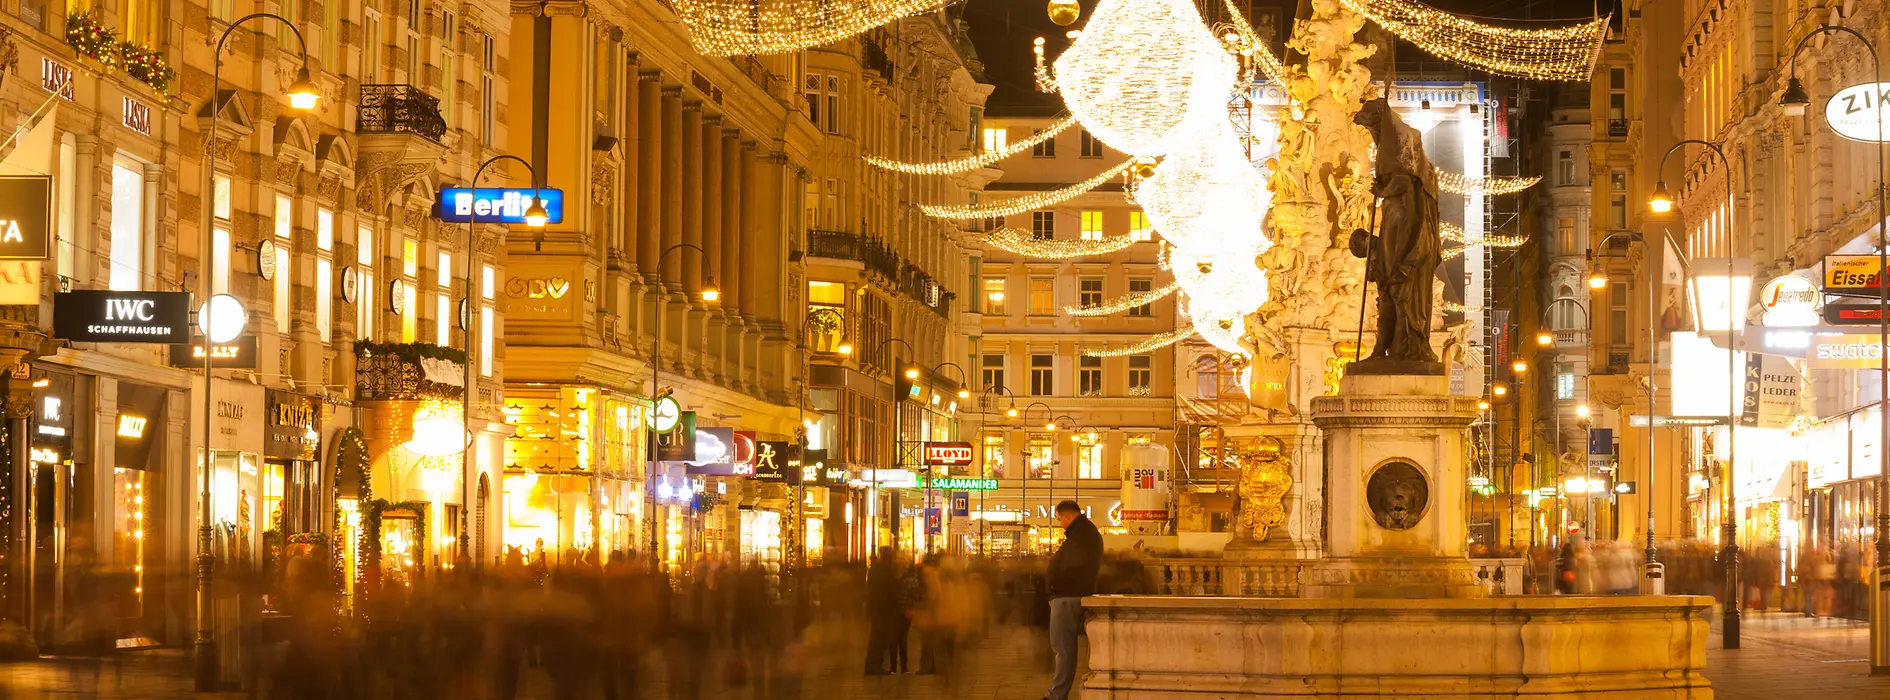 Weihnachtsbeleuchtung auf einer Wiener Einkaufsstraße